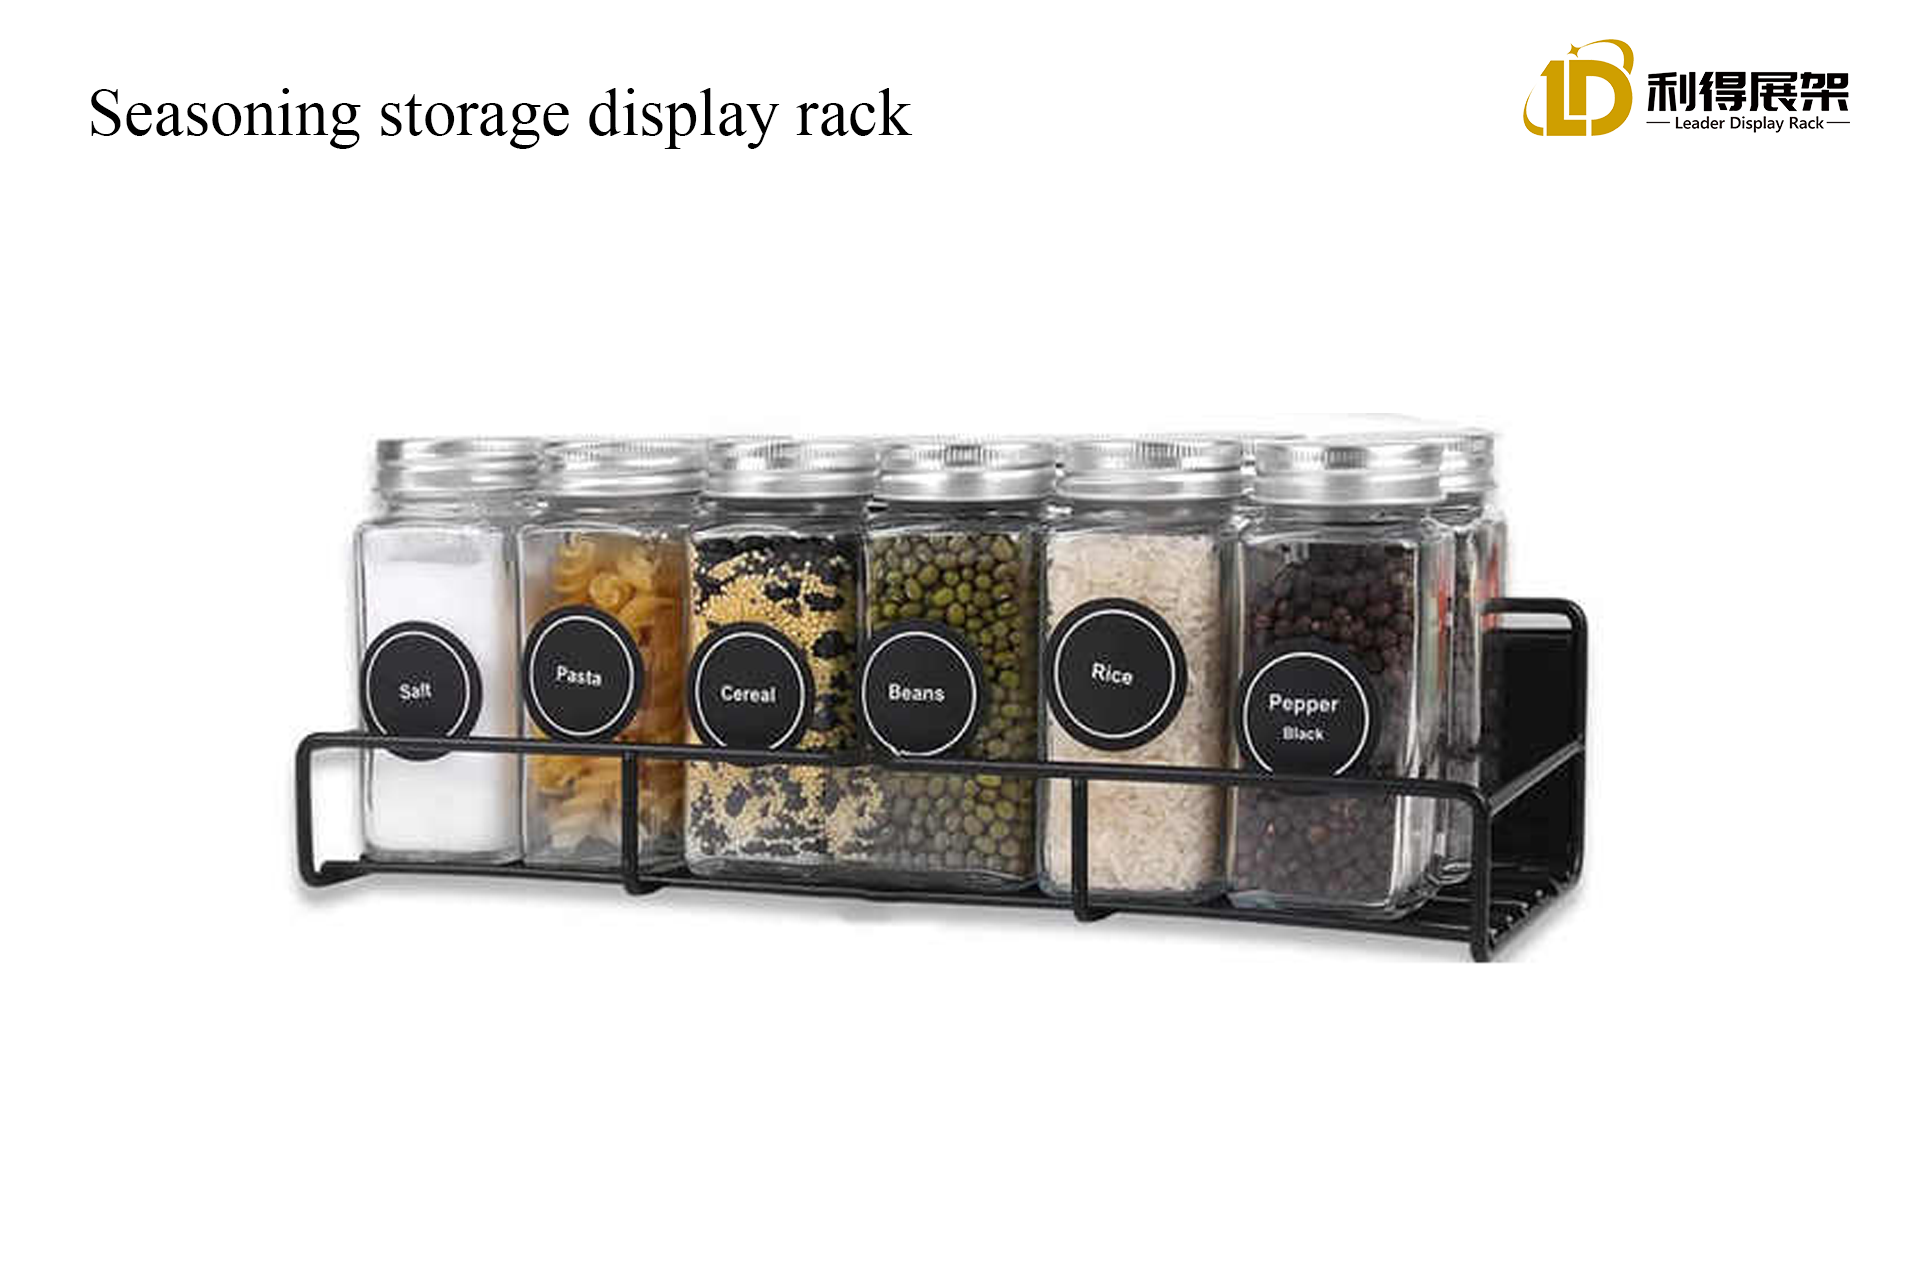 Seasoning storage display rack